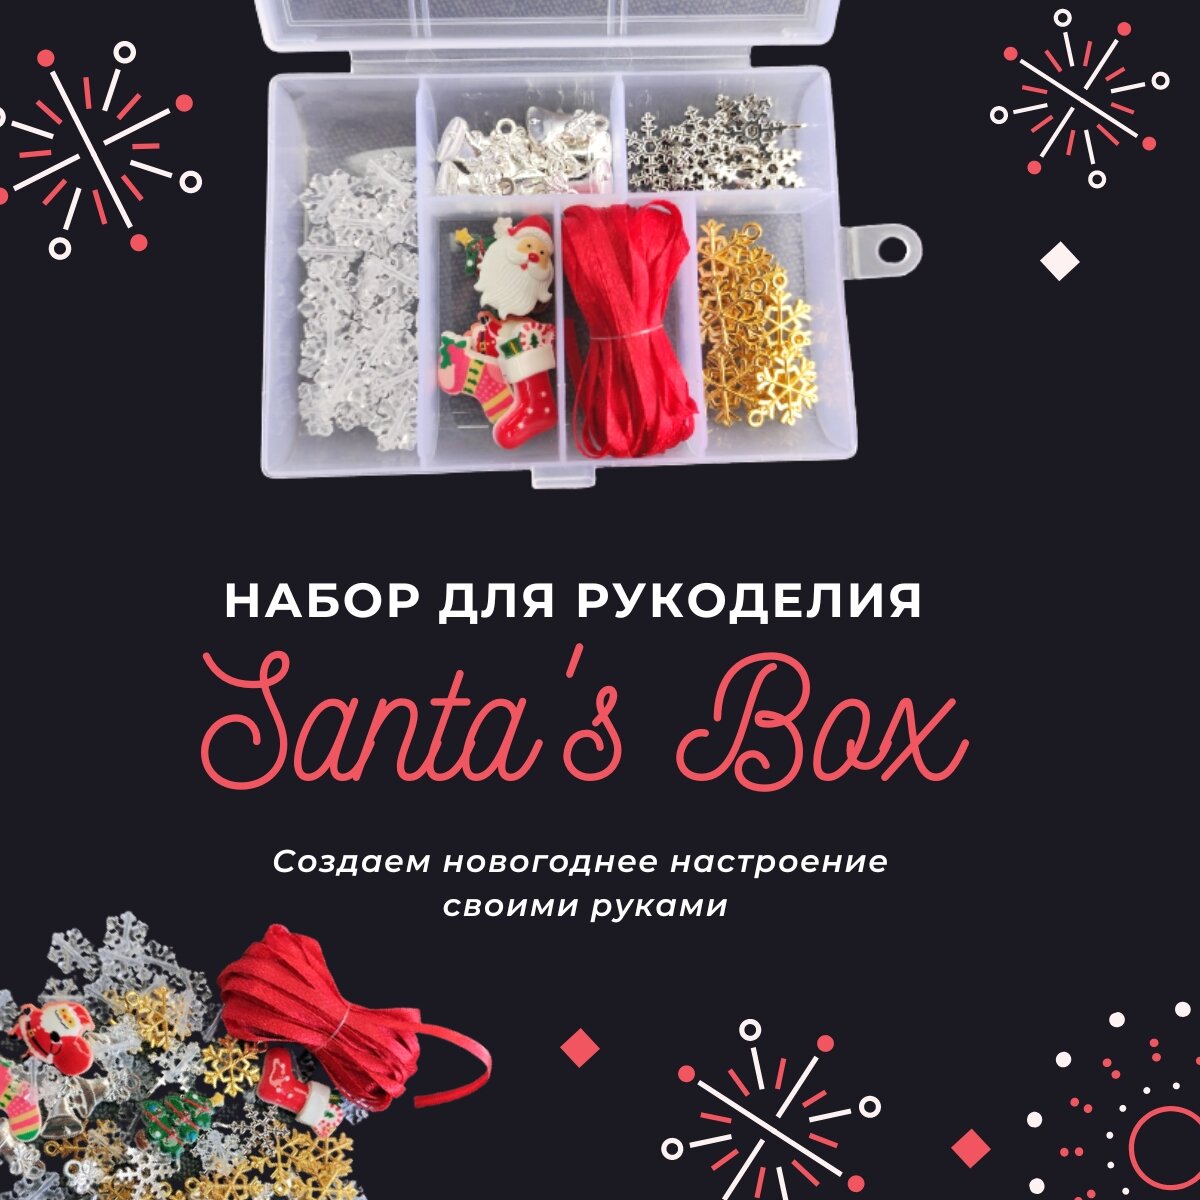 Набор для рукоделия Santa's Box / набор для создания украшений своими руками